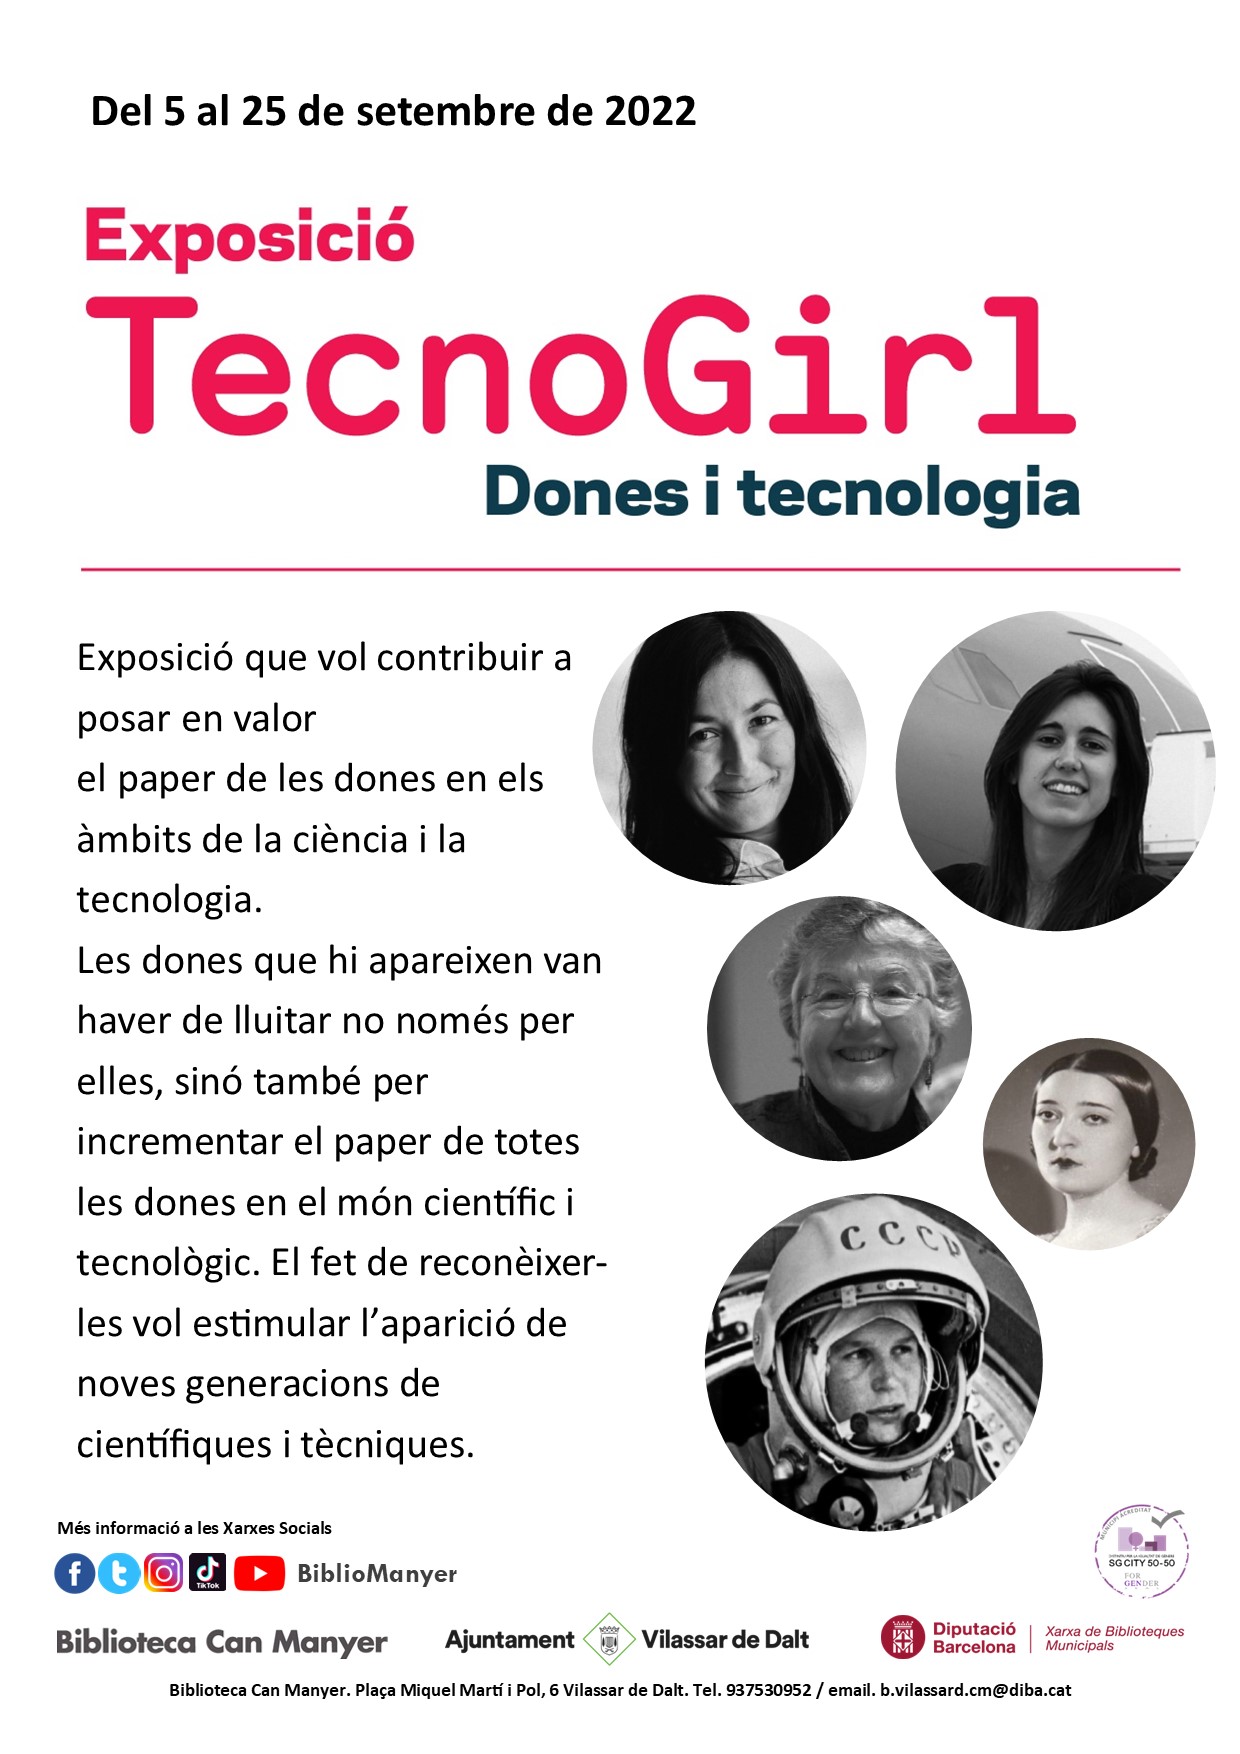 Exposició 'TecnoGirl: Dones i tecnologia'